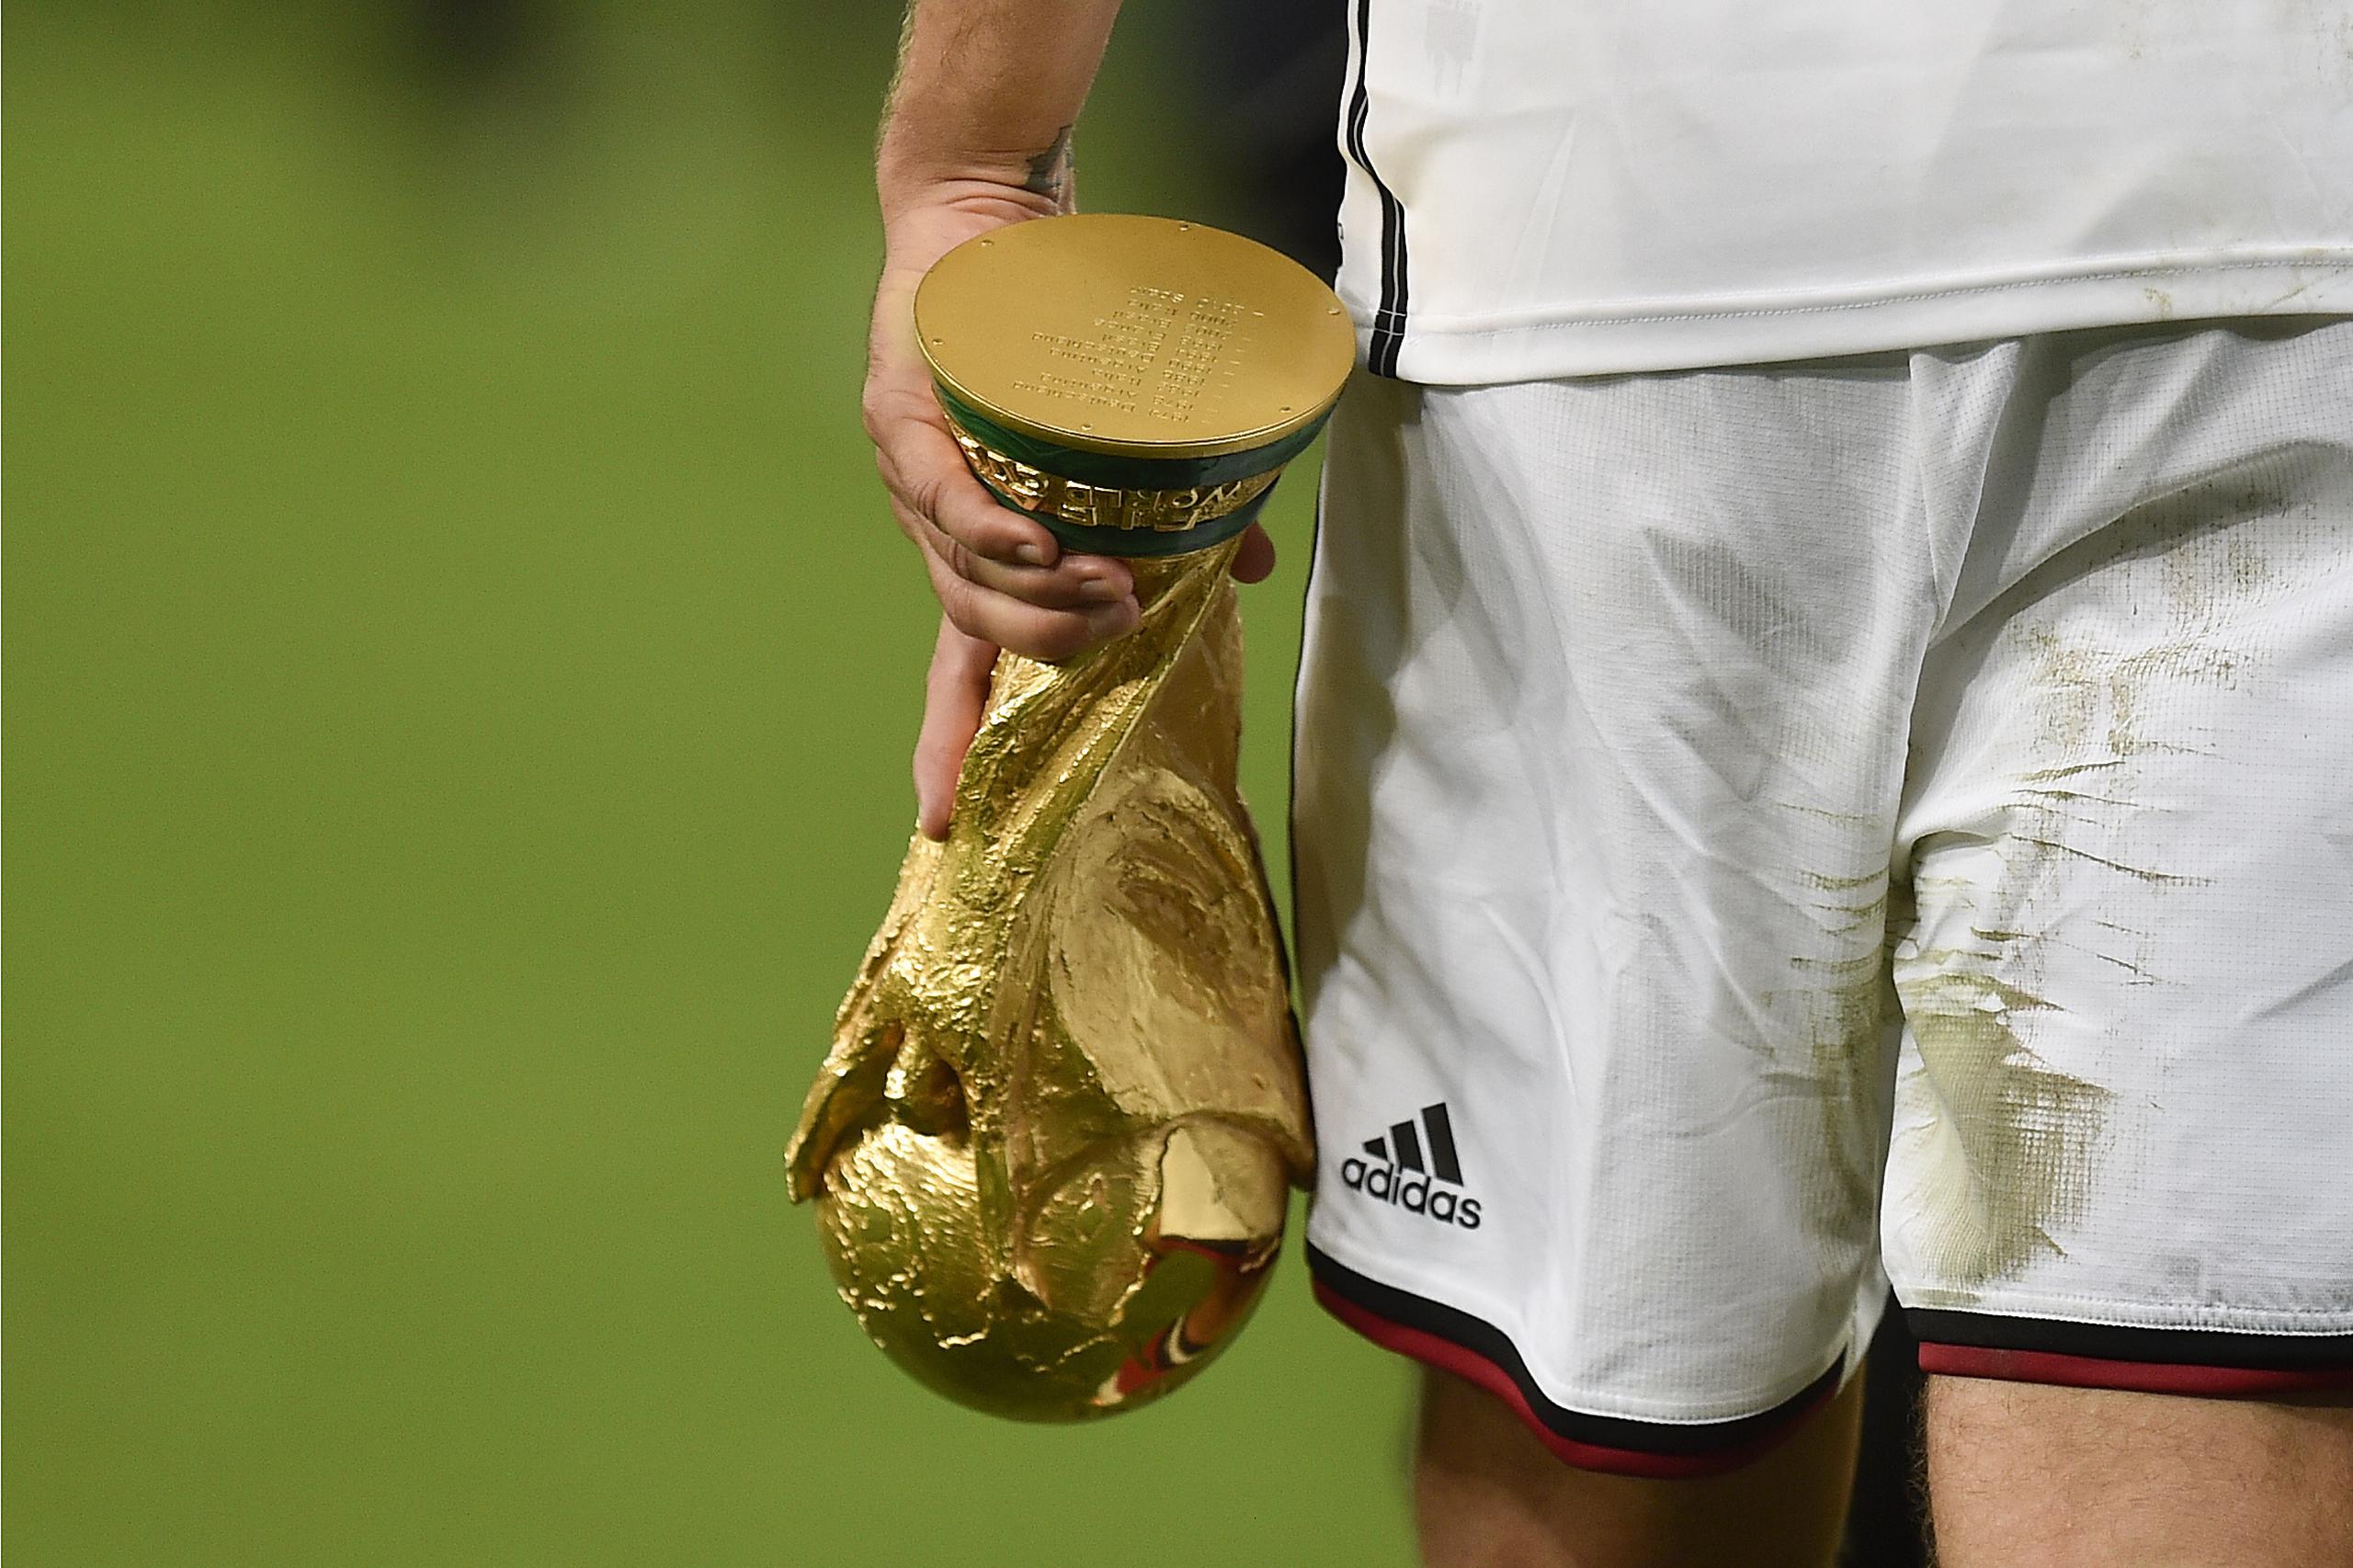 El delantero alemán Lukas Podolski se retira de la cancha con el trofeo de la Copa Mundial tras vencer a Argentina en la final, el 13 de julio de 2014, en Río de Janeiro.